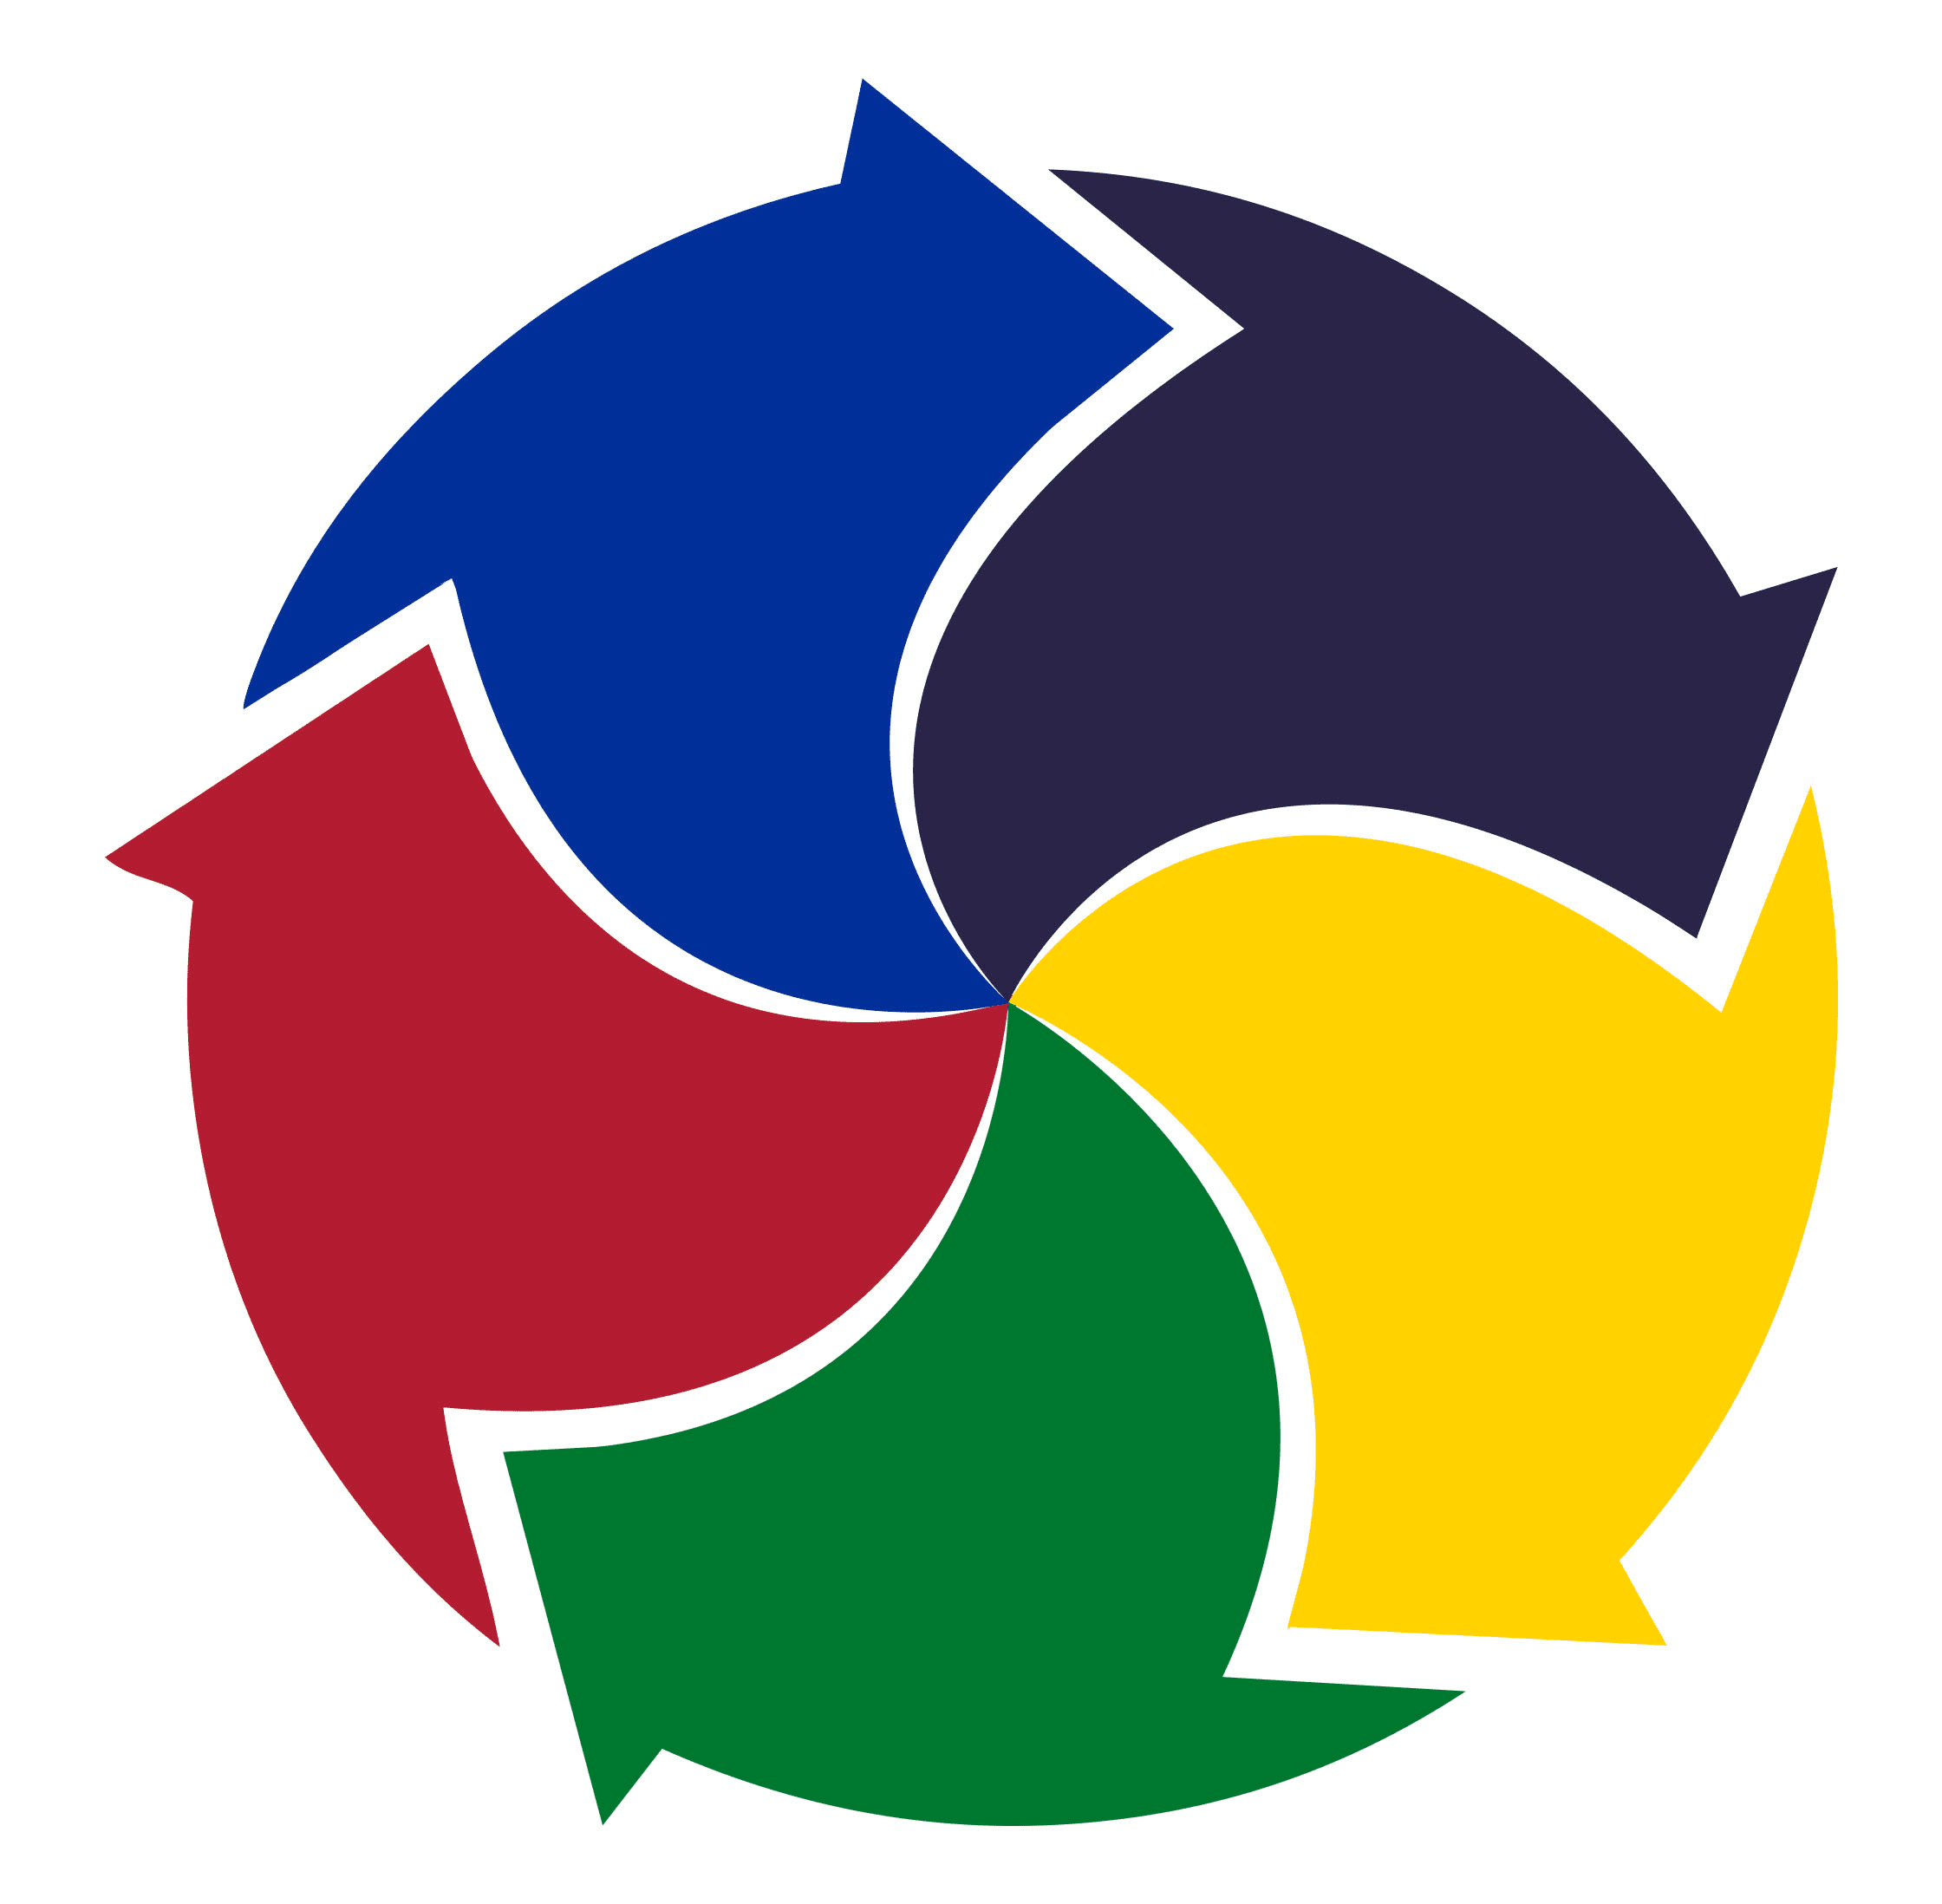 The five-color globe